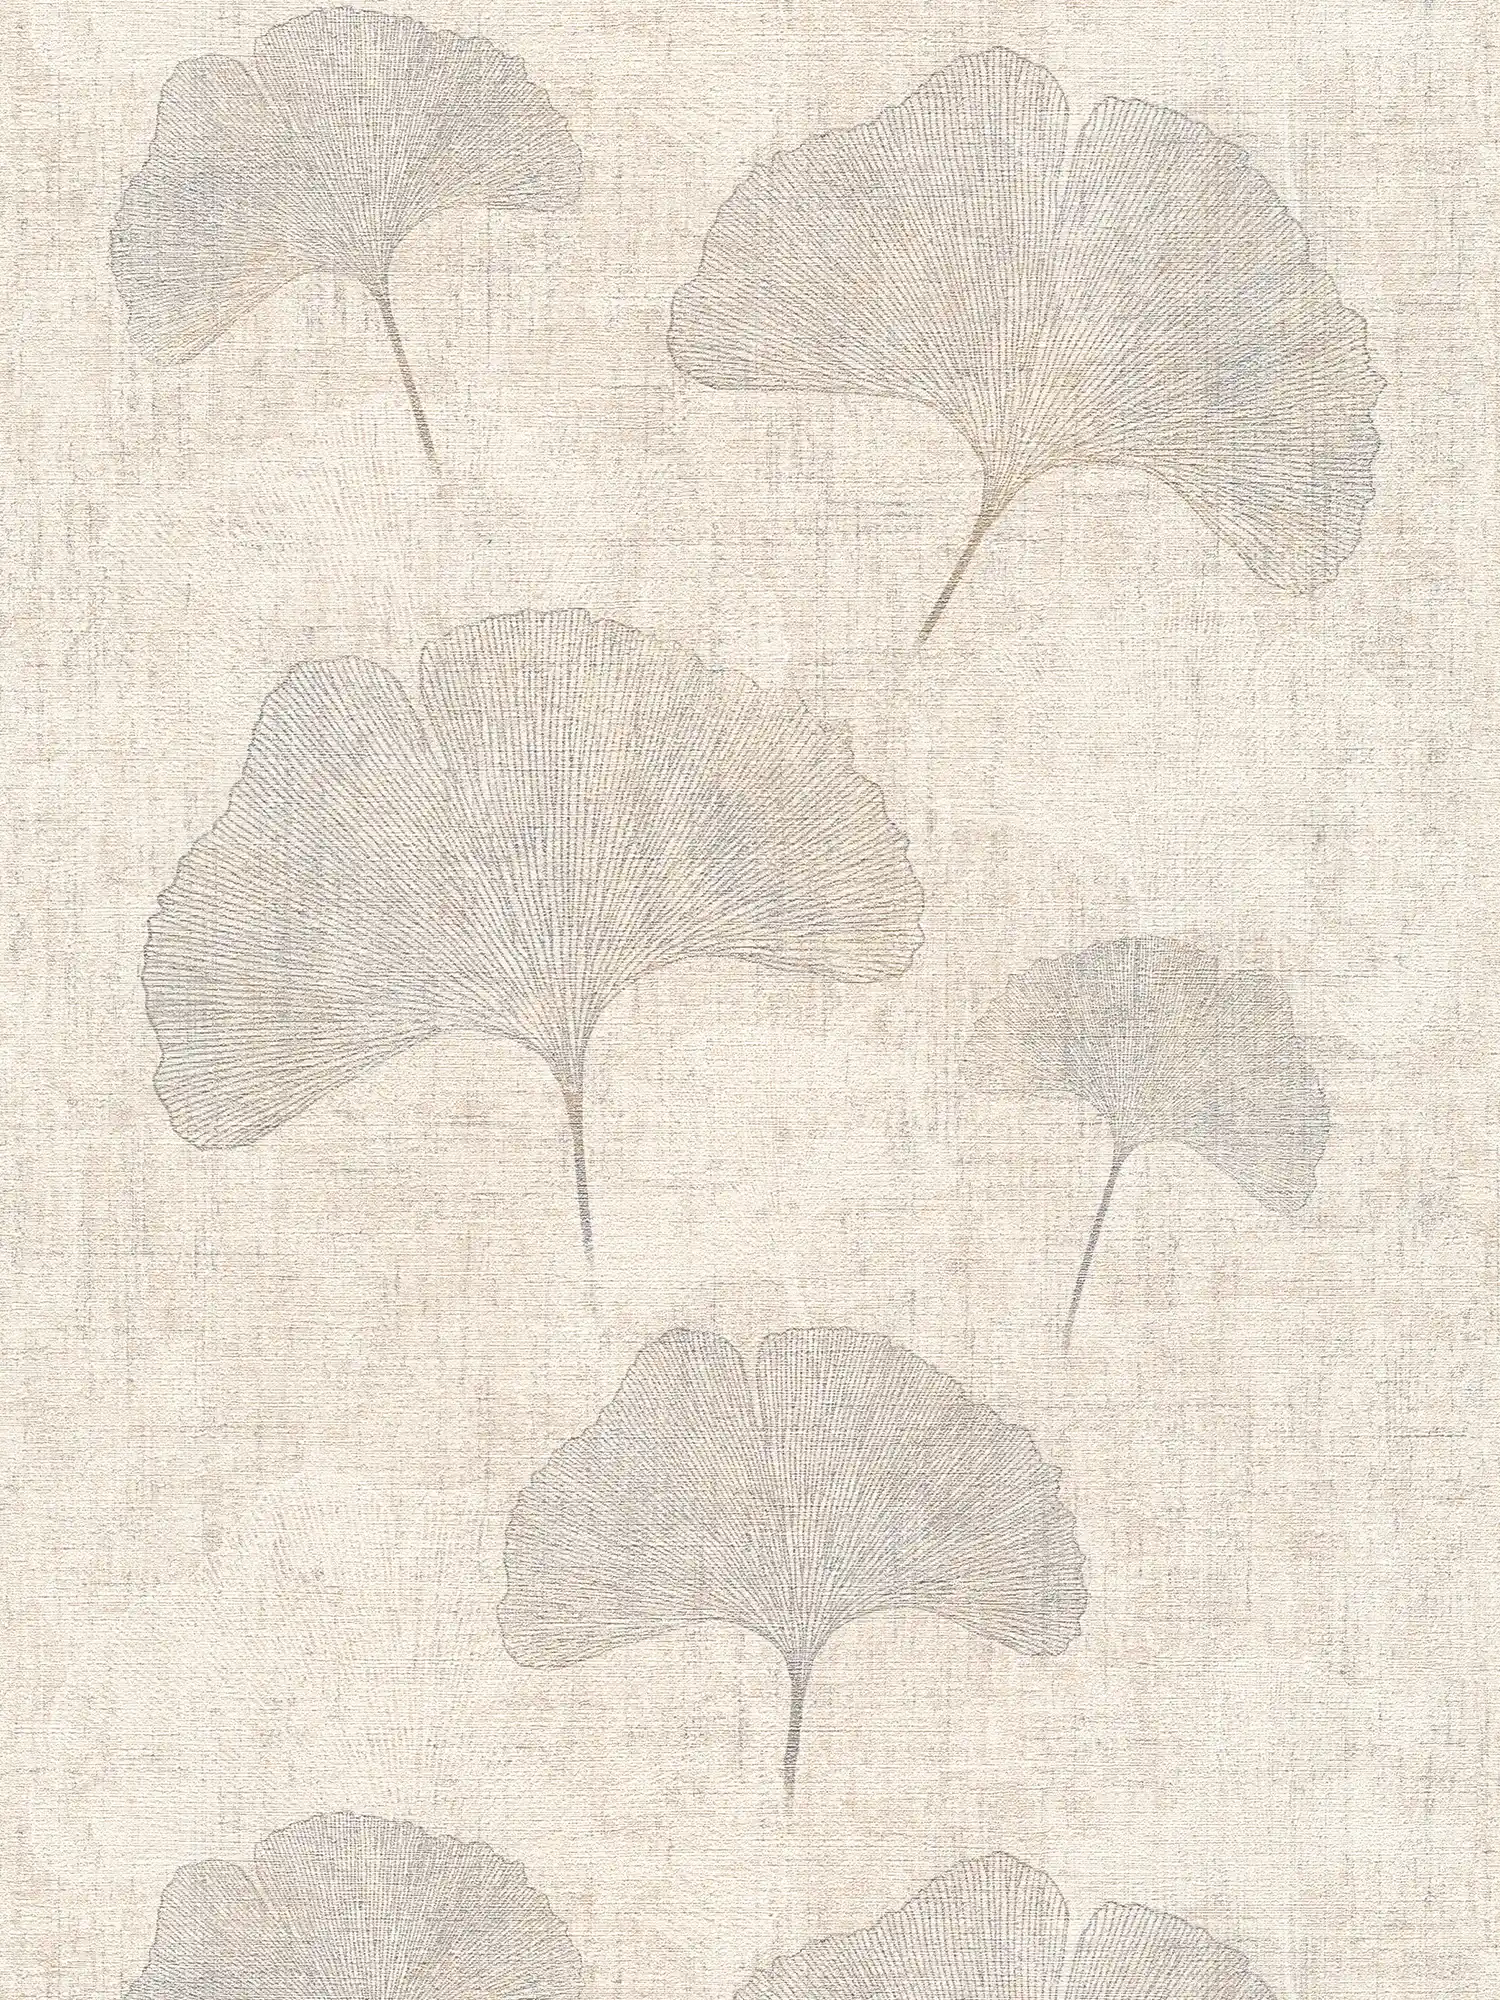 Natürliche Tapete mit Ginko-Blättermuster mit silbernem Metallic-Effekt und Textilstruktur – Beige, Silber, Braun
